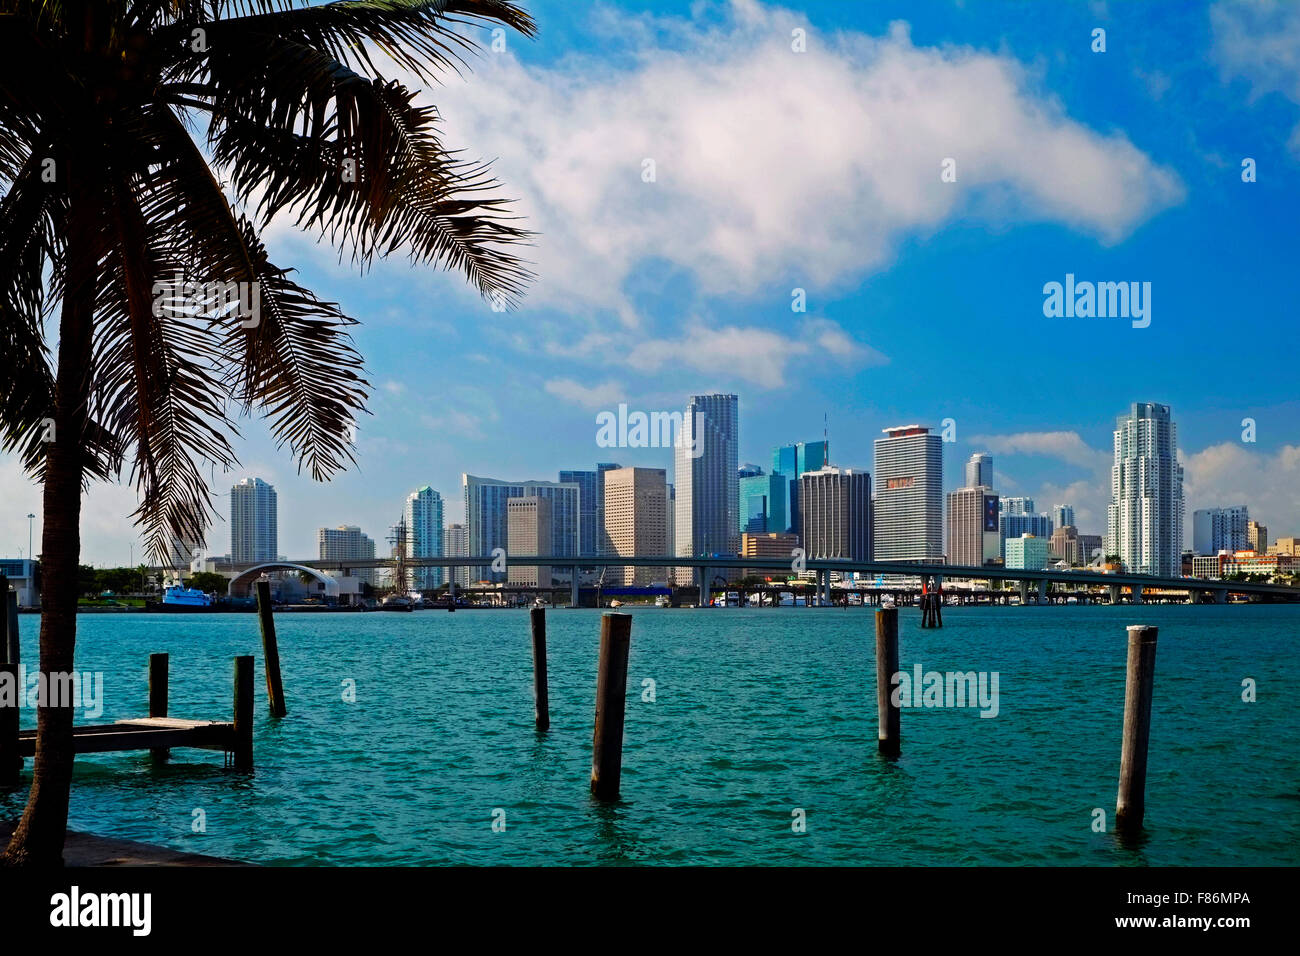 La ville de Miami, Floride, USA Banque D'Images